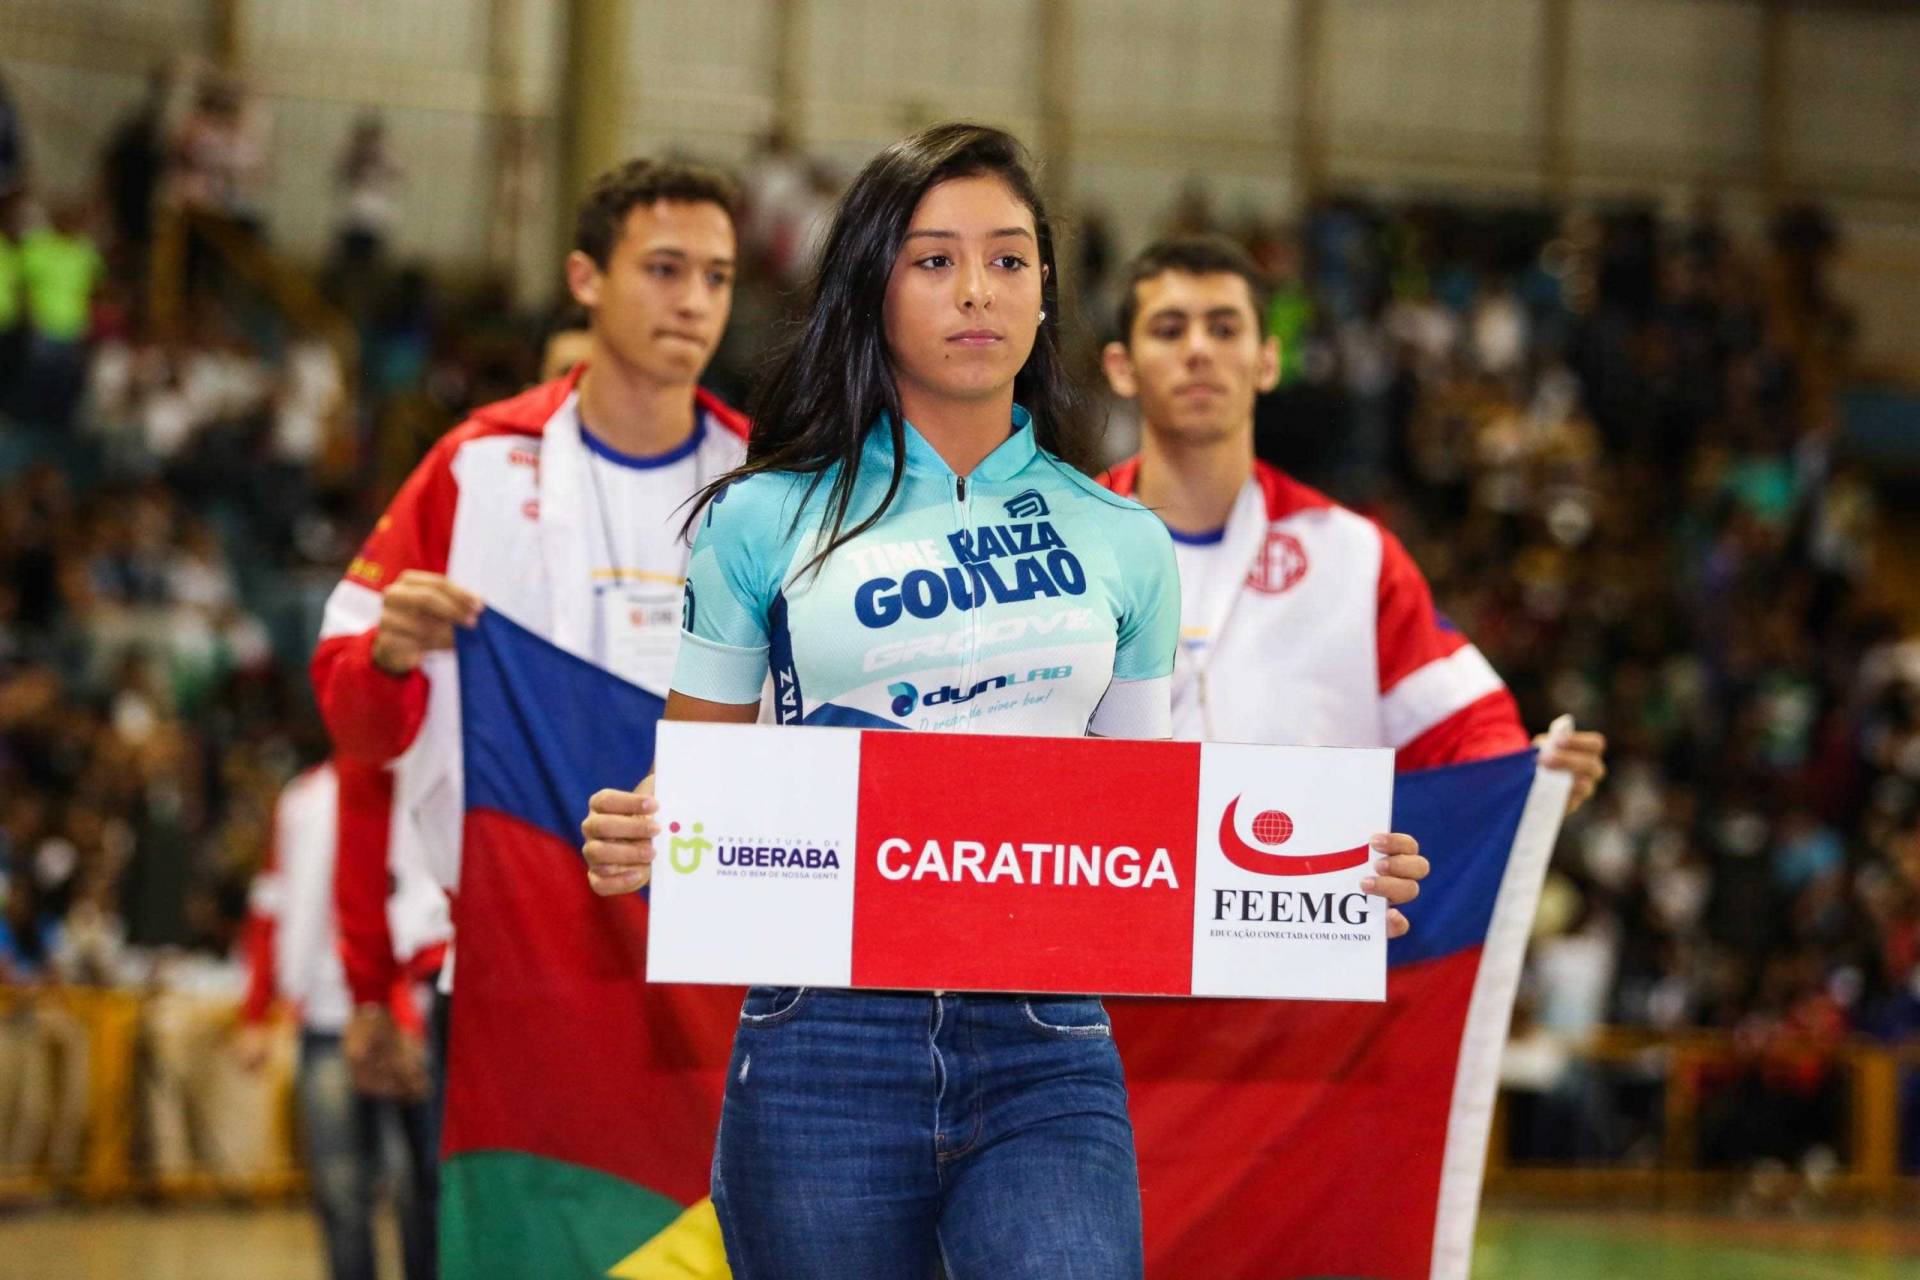 FEEMG (Federação de Esportes Estudantis de Minas Gerais)